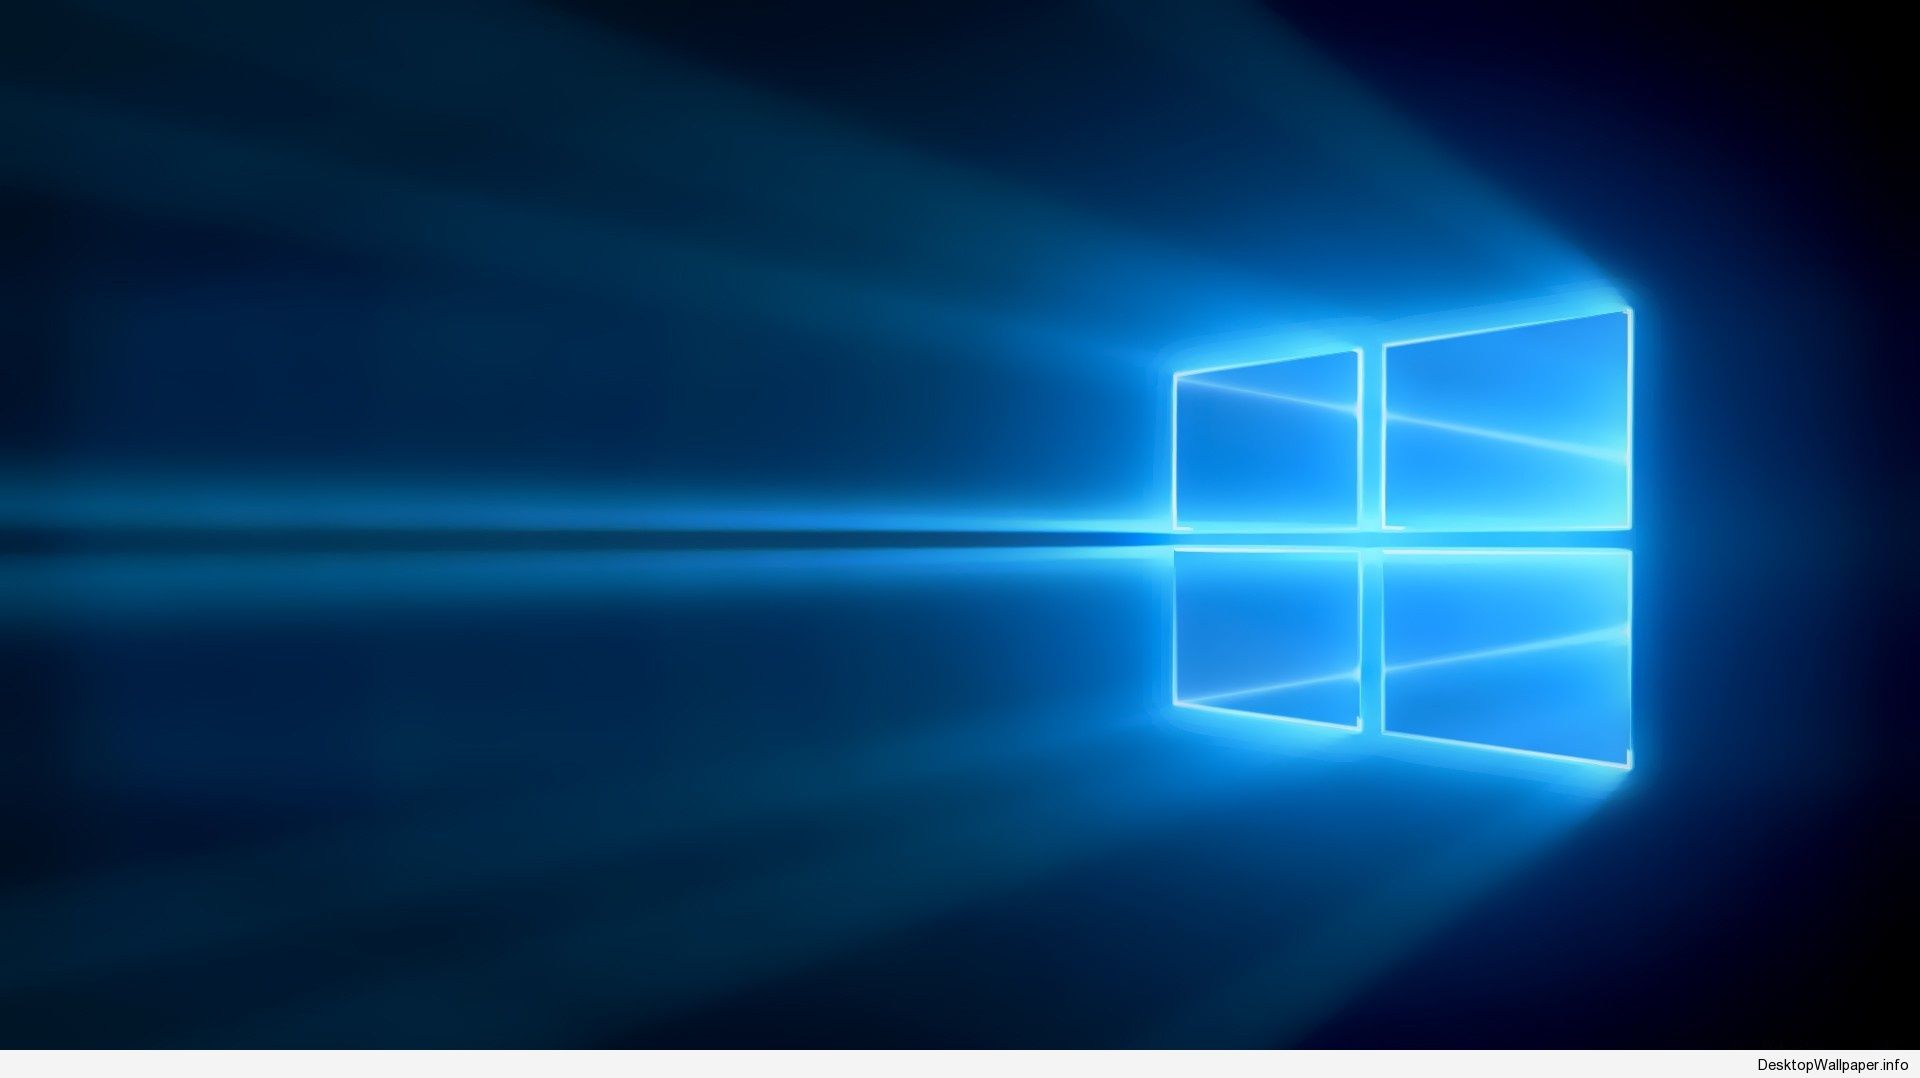 Windows 10 (Windows 10) - Sẵn sàng để khám phá các tính năng mới nhất của hệ điều hành Windows 10? Hãy cùng chúng tôi đón xem những hình ảnh liên quan đến Windows 10 để hiểu rõ hơn về hệ thống này. Từ giao diện mới đến nâng cấp hiệu suất, tất cả đều có trong những hình ảnh đẹp mắt của chúng tôi.